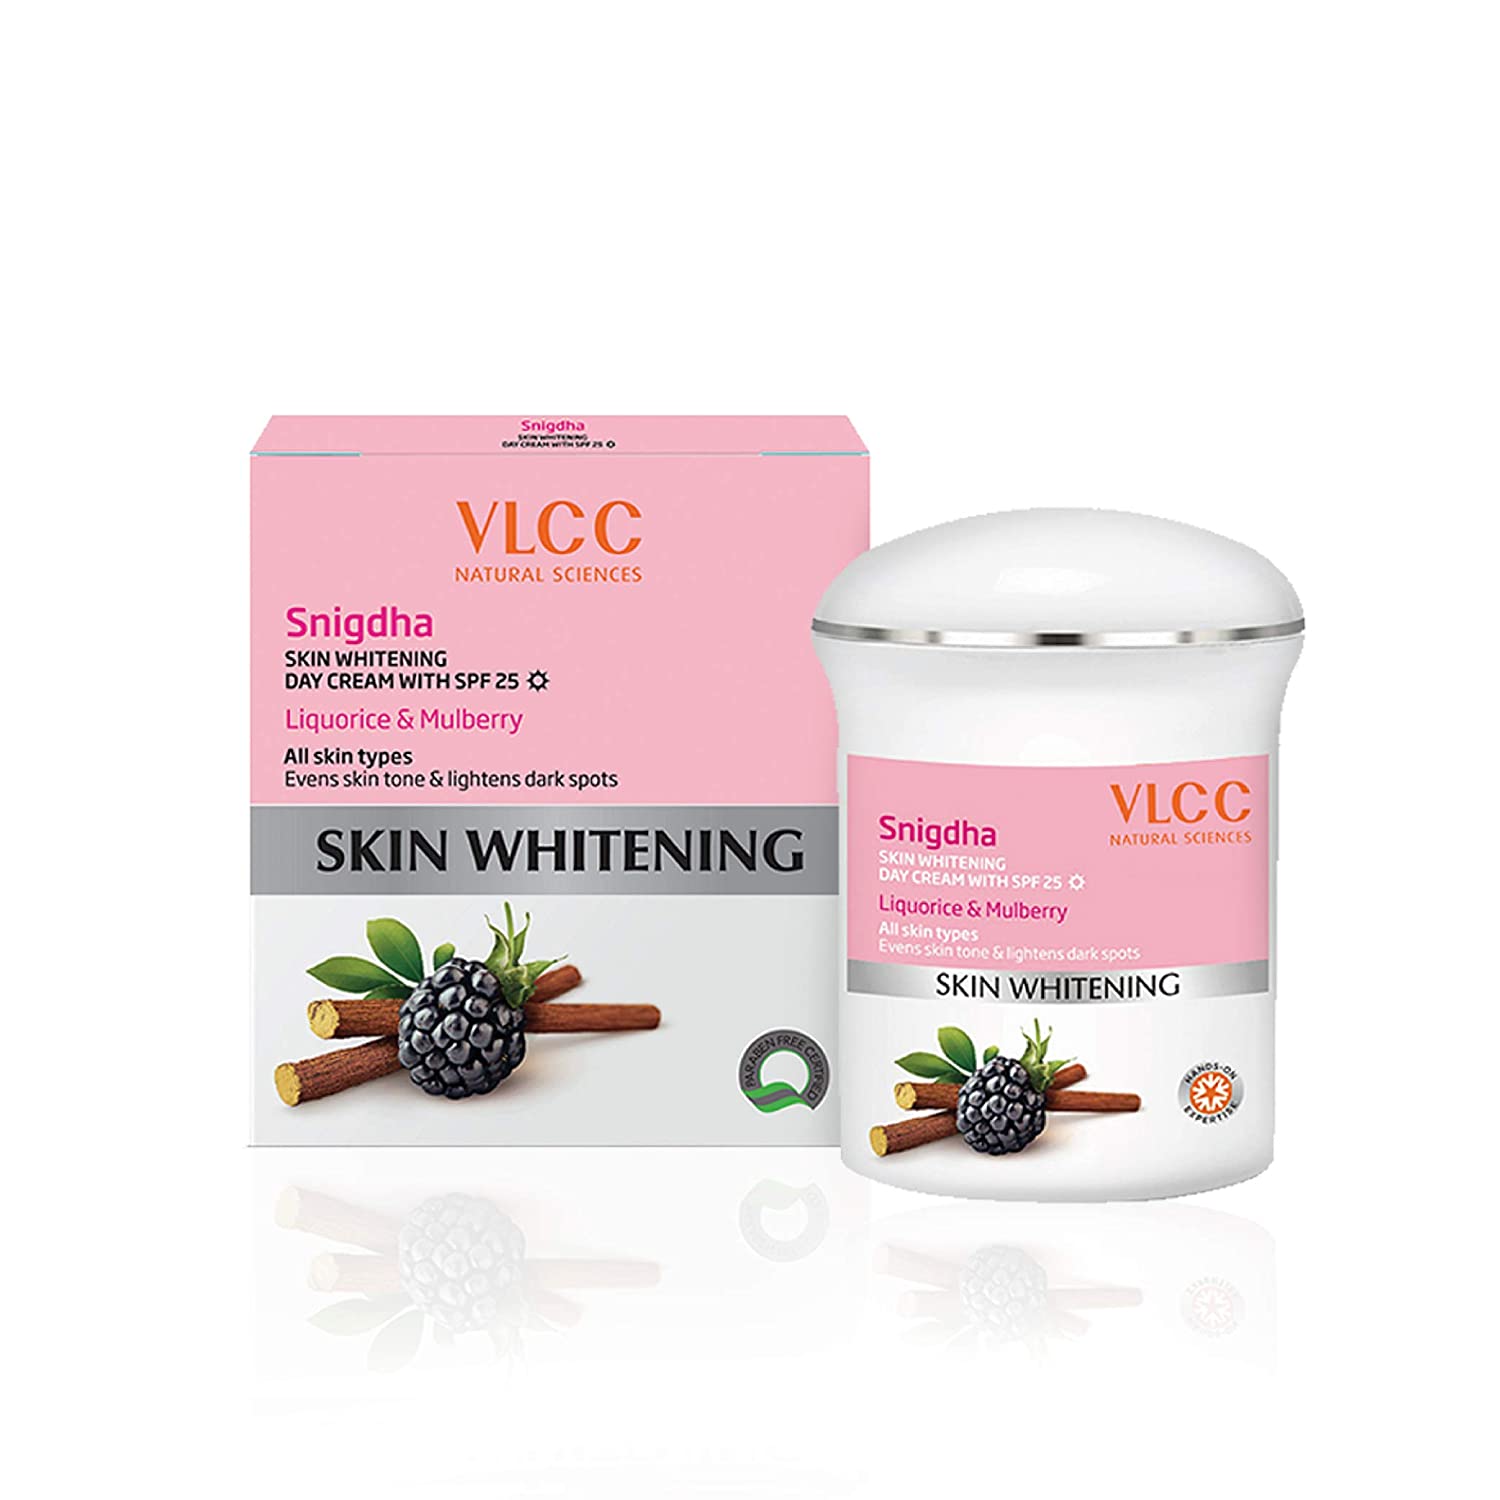 VLCC Snigdha Skin Whitening (Day Cream)